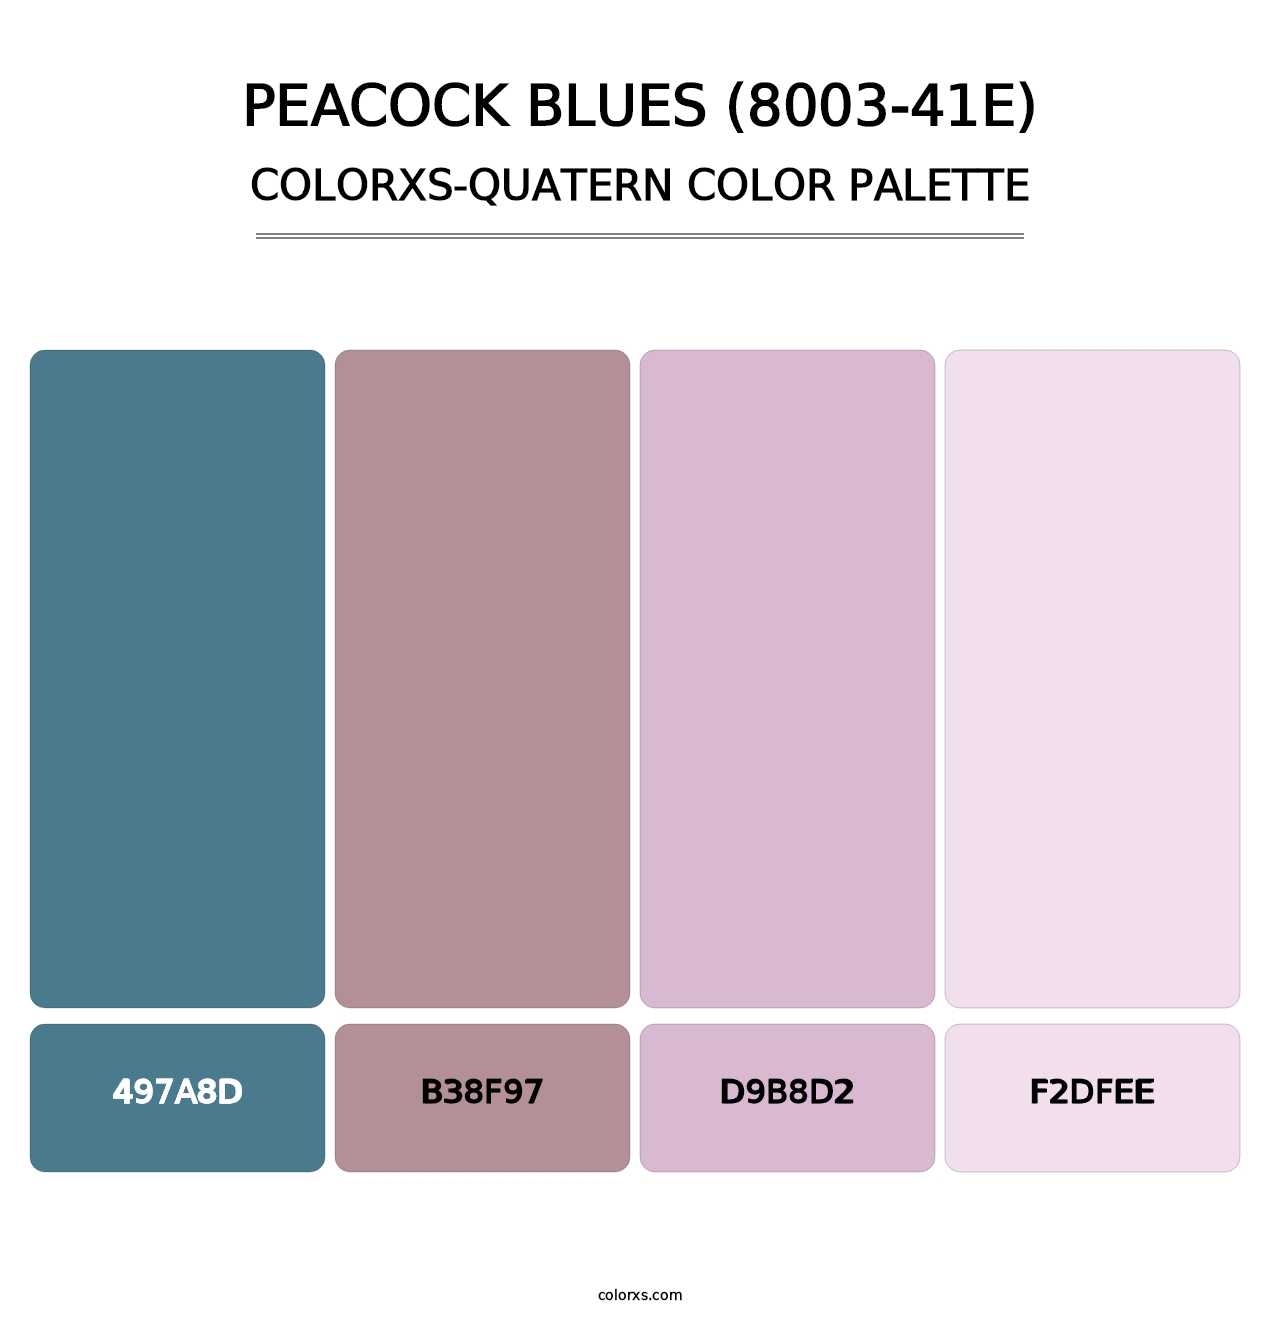 Peacock Blues (8003-41E) - Colorxs Quatern Palette